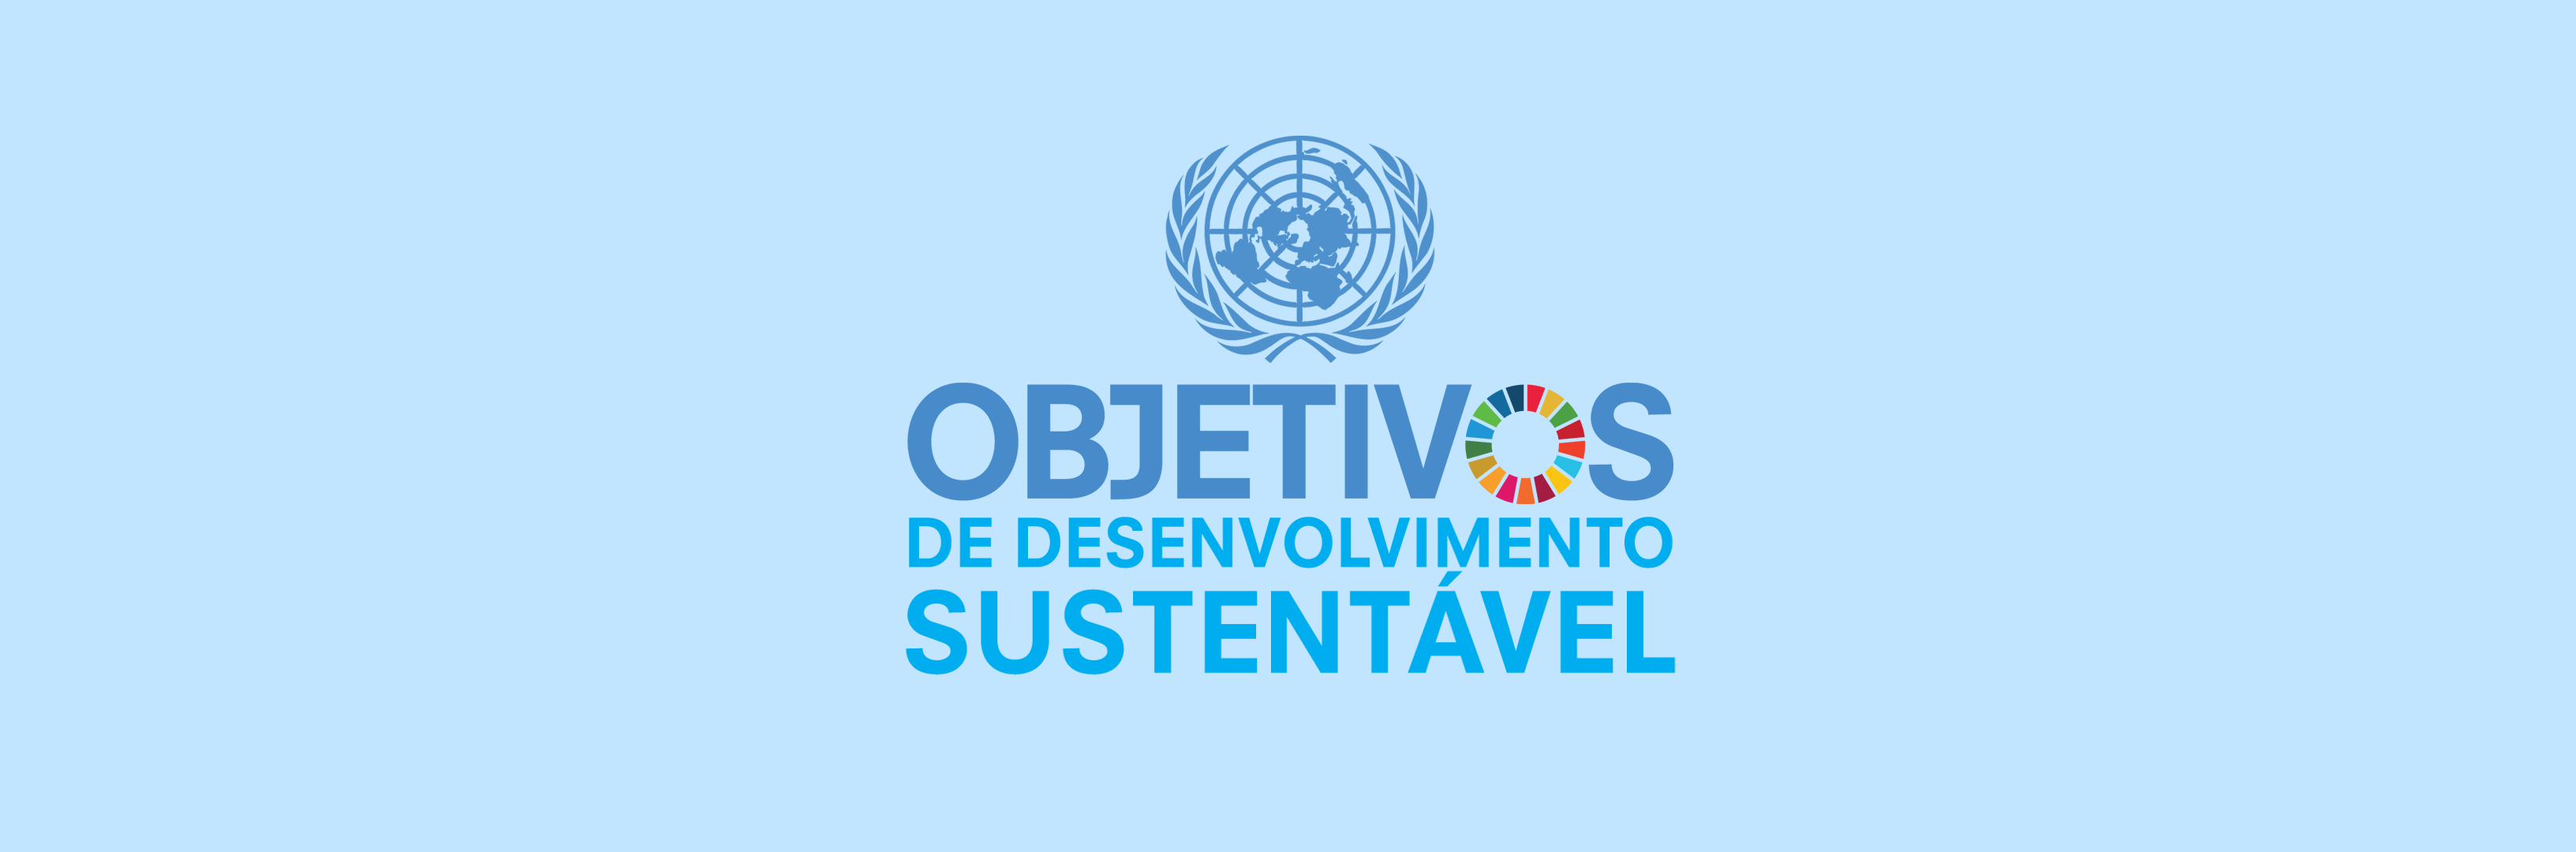 Banner com fundo azul claro com o logotipo da Organização das Nações Unidas e o texto Objetivos de Desenvolvimento Sustentável, em tons de azul. A segunda letra "O" de Objetivos está grafada como uma roleta colorida.